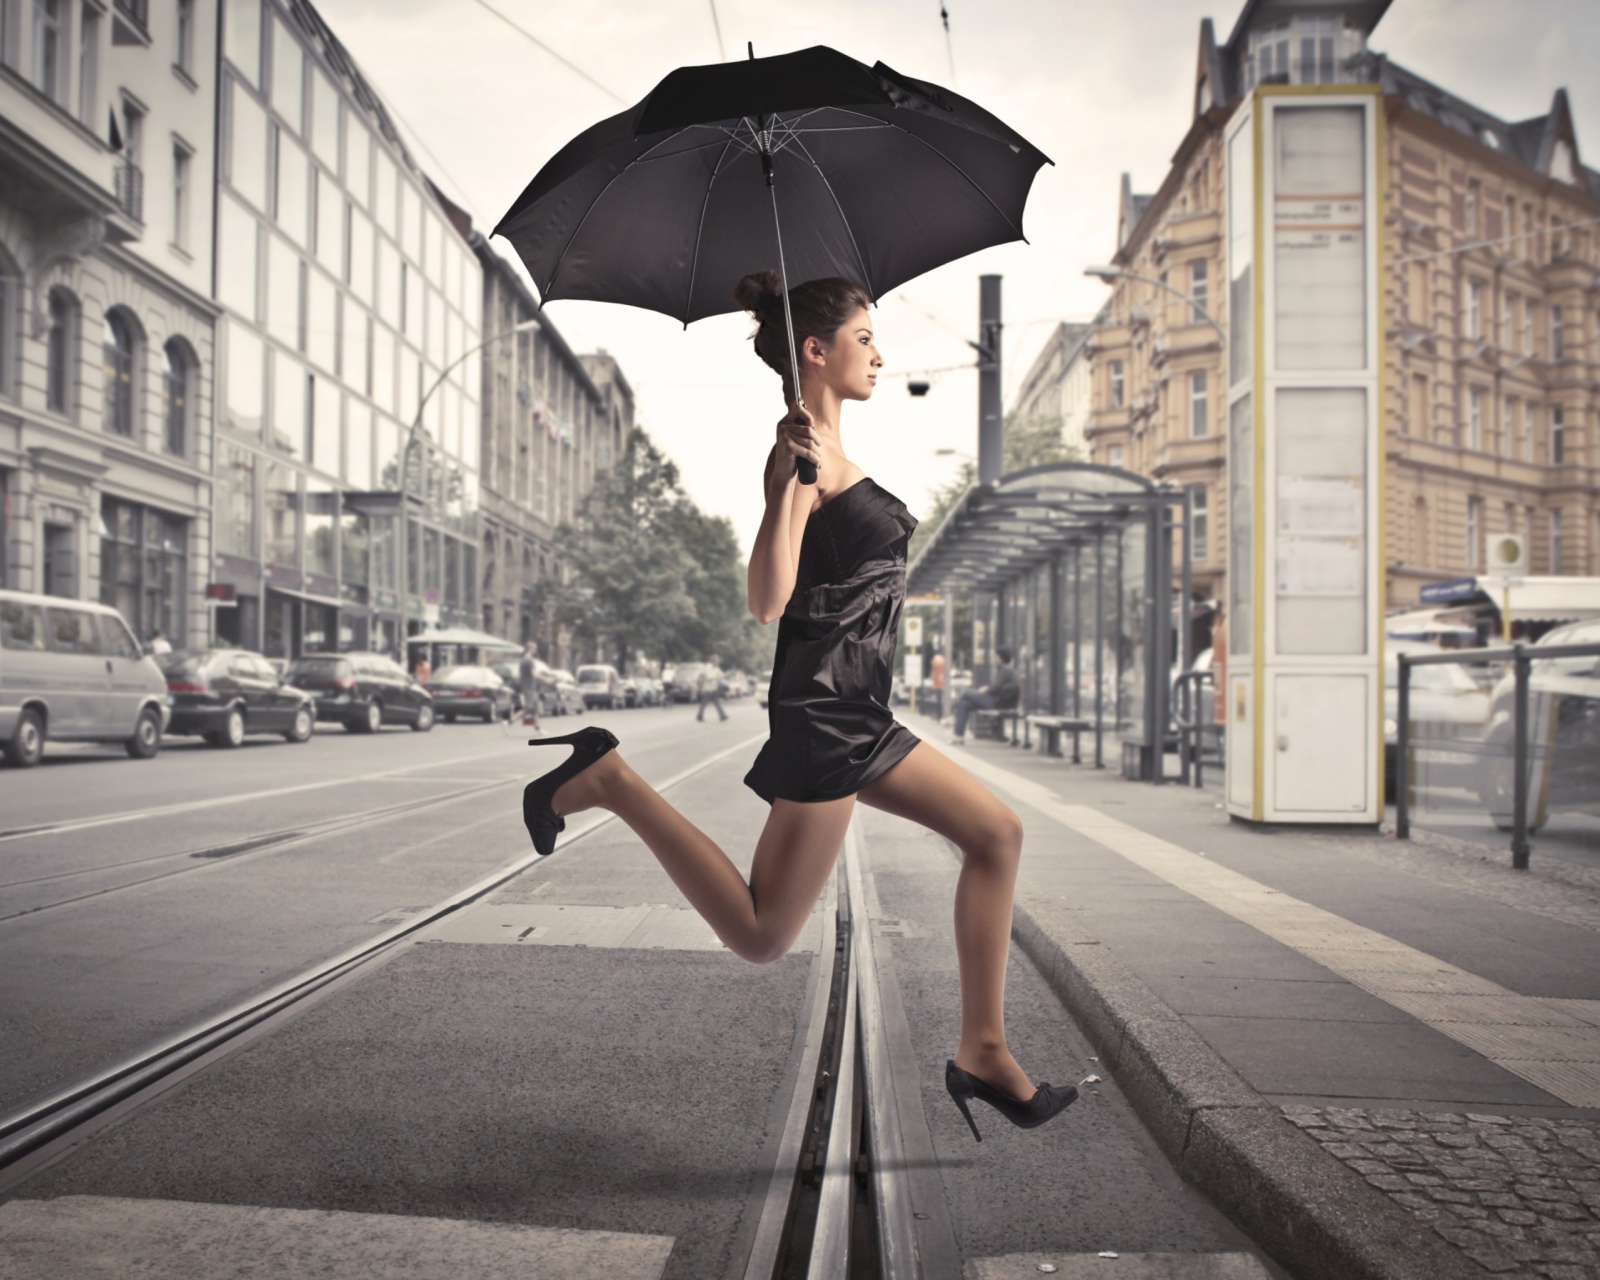 Обои City Girl With Black Umbrella 1600x1280